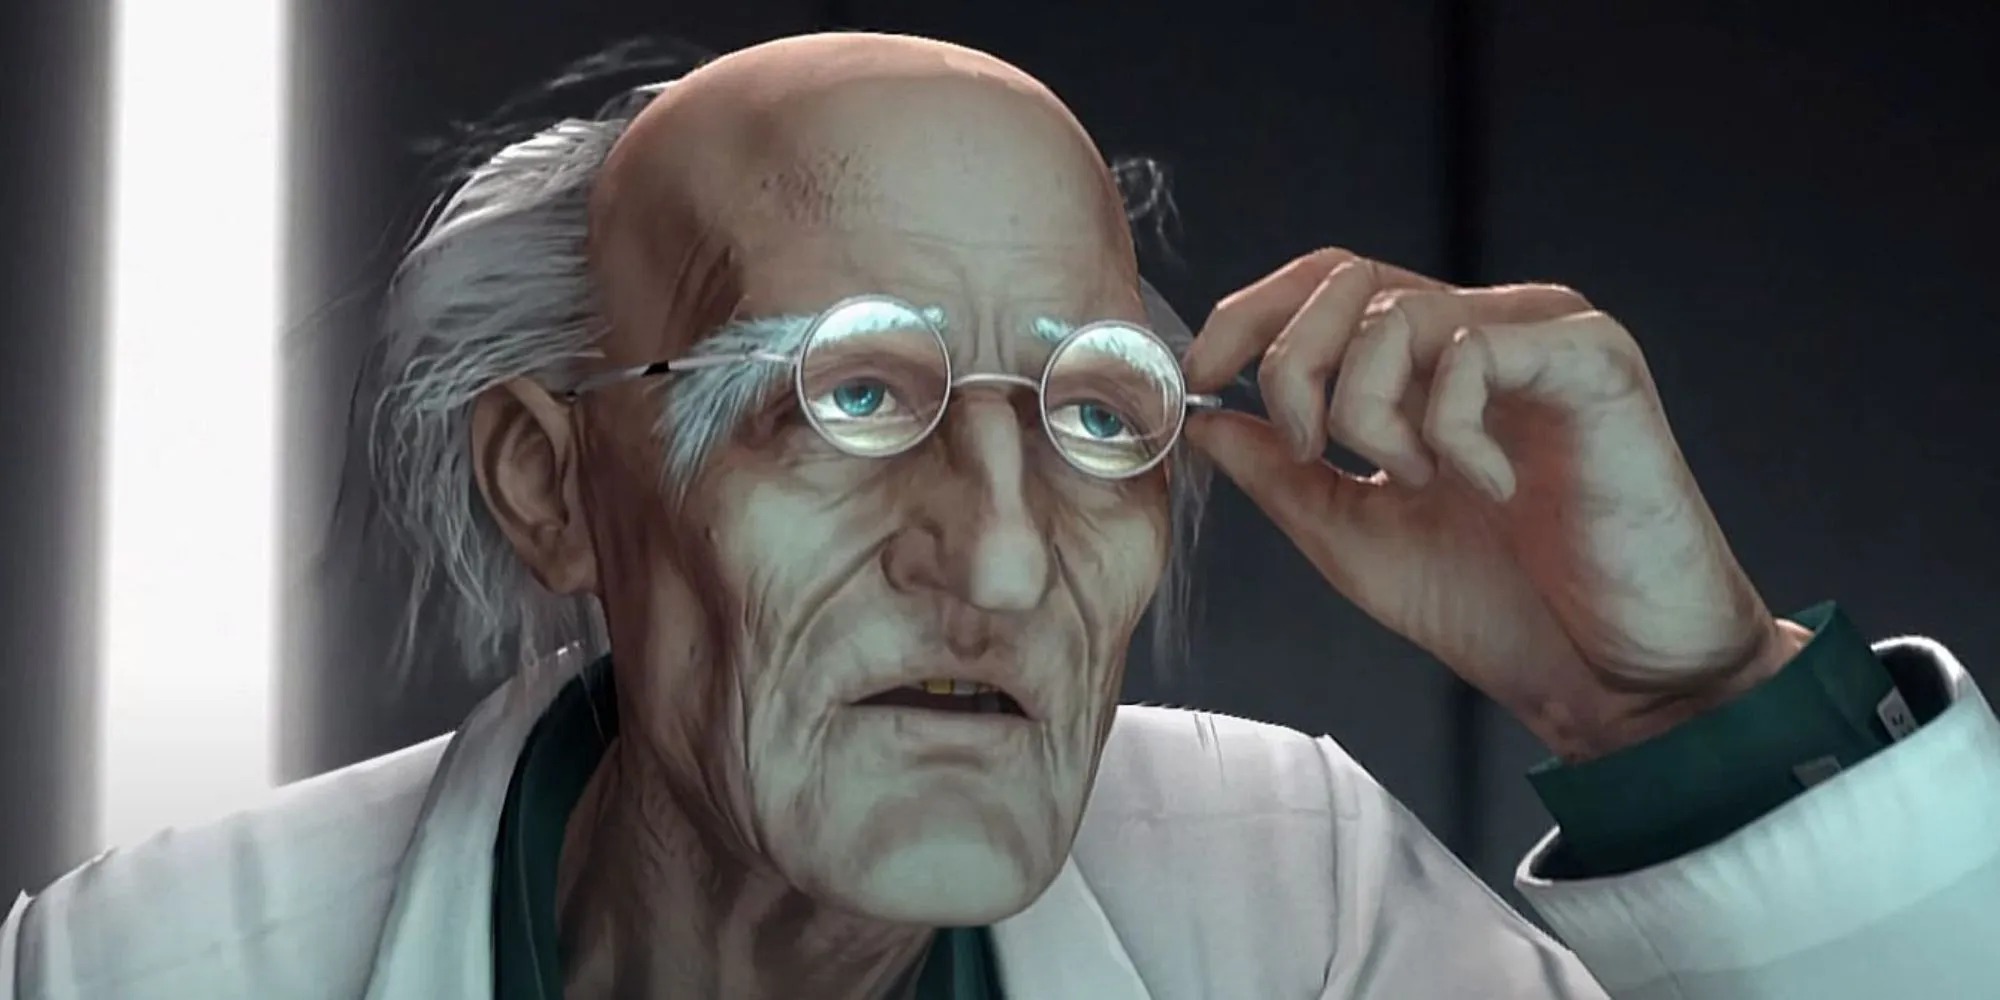 Dr. ボスコノビッチがメガネを持っています